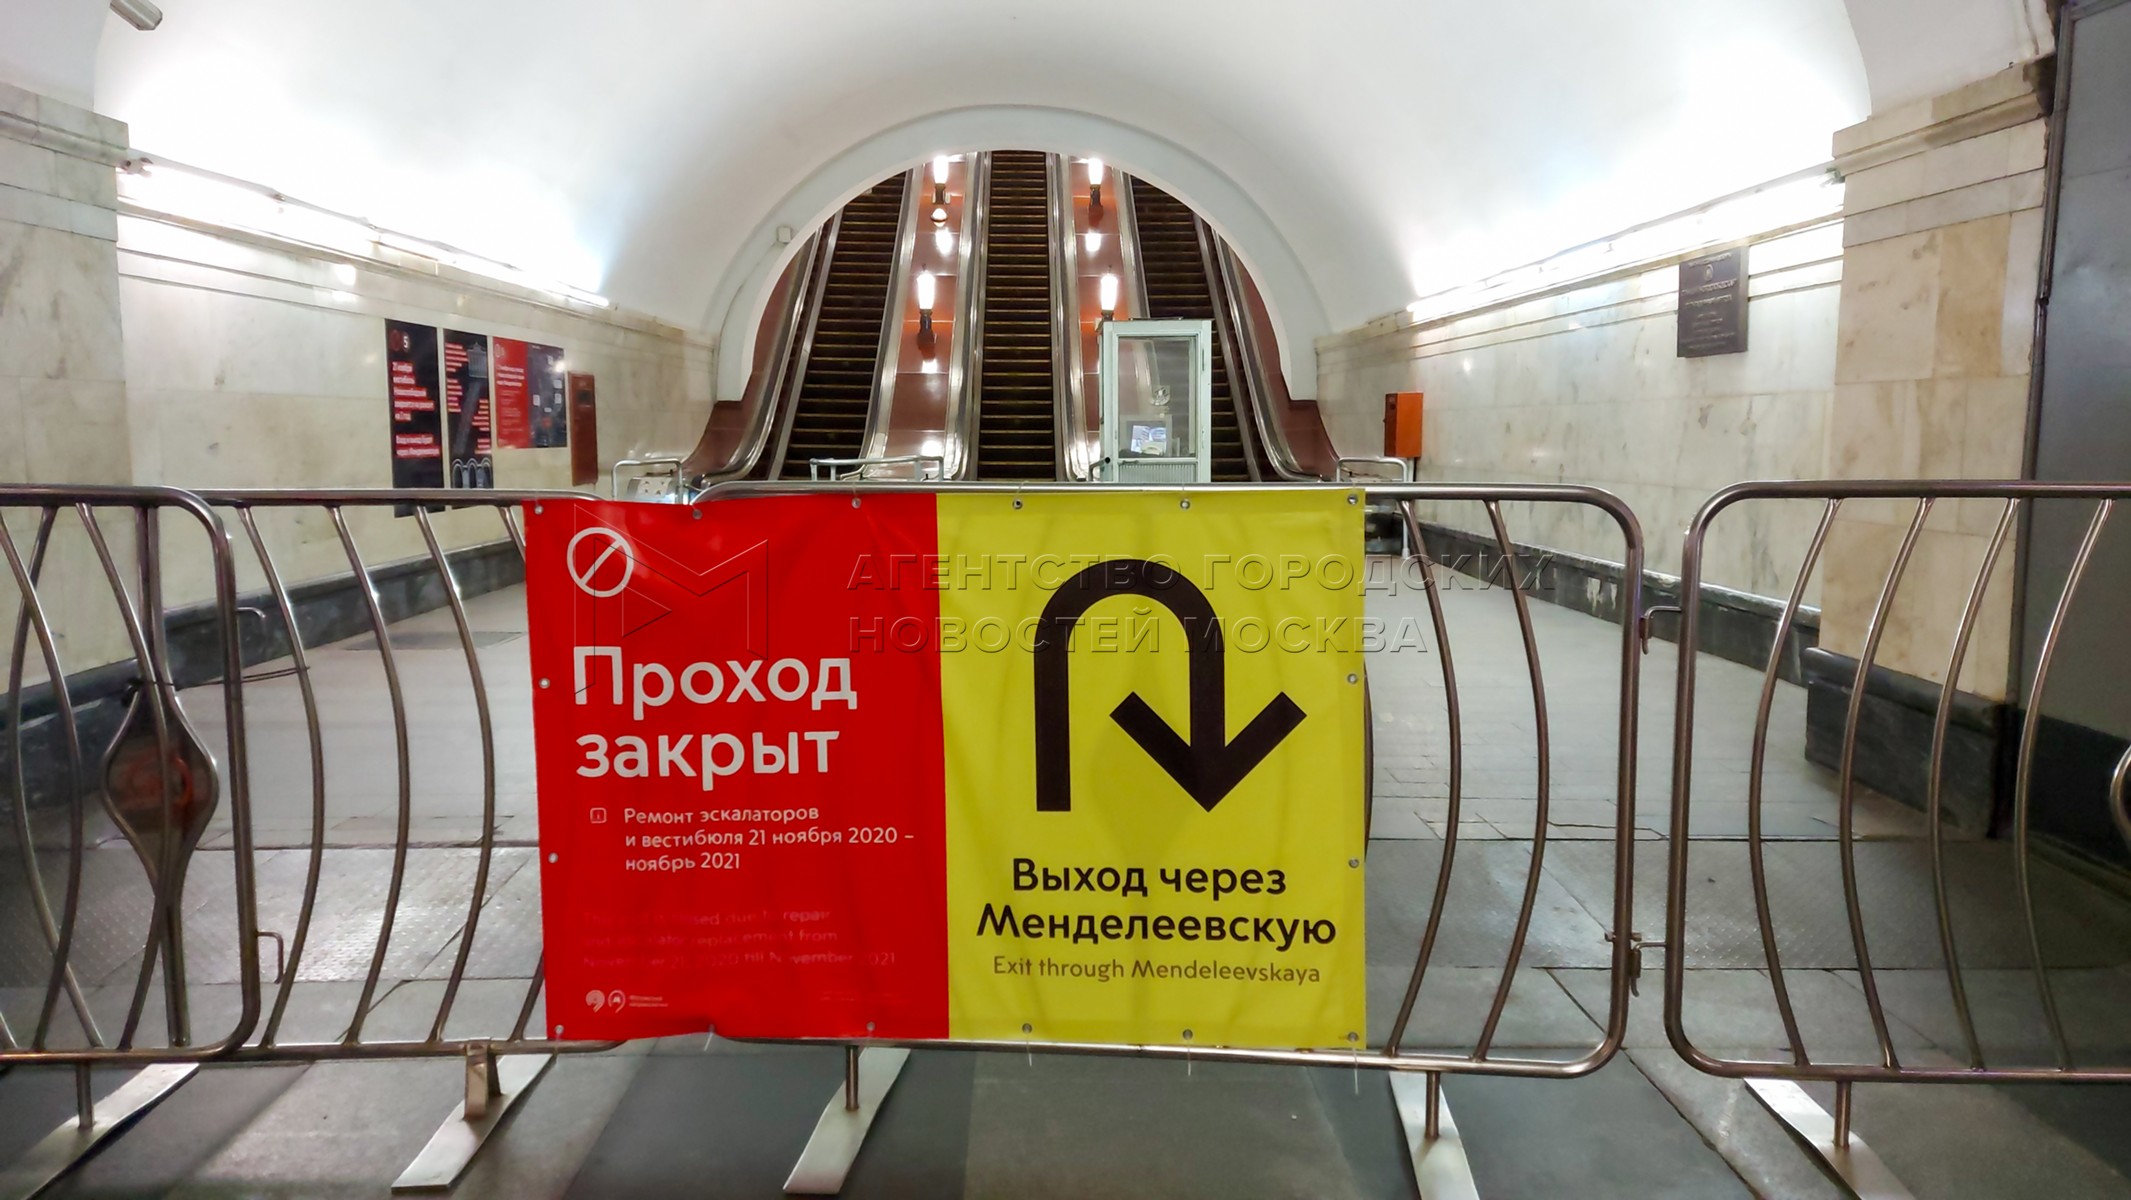 Какие станция закрыли в москве. Станция Новослободская вестибюль. Закрытие вестибюлей метро Новослободская. Закрытие станций метро. Метро закрыто.